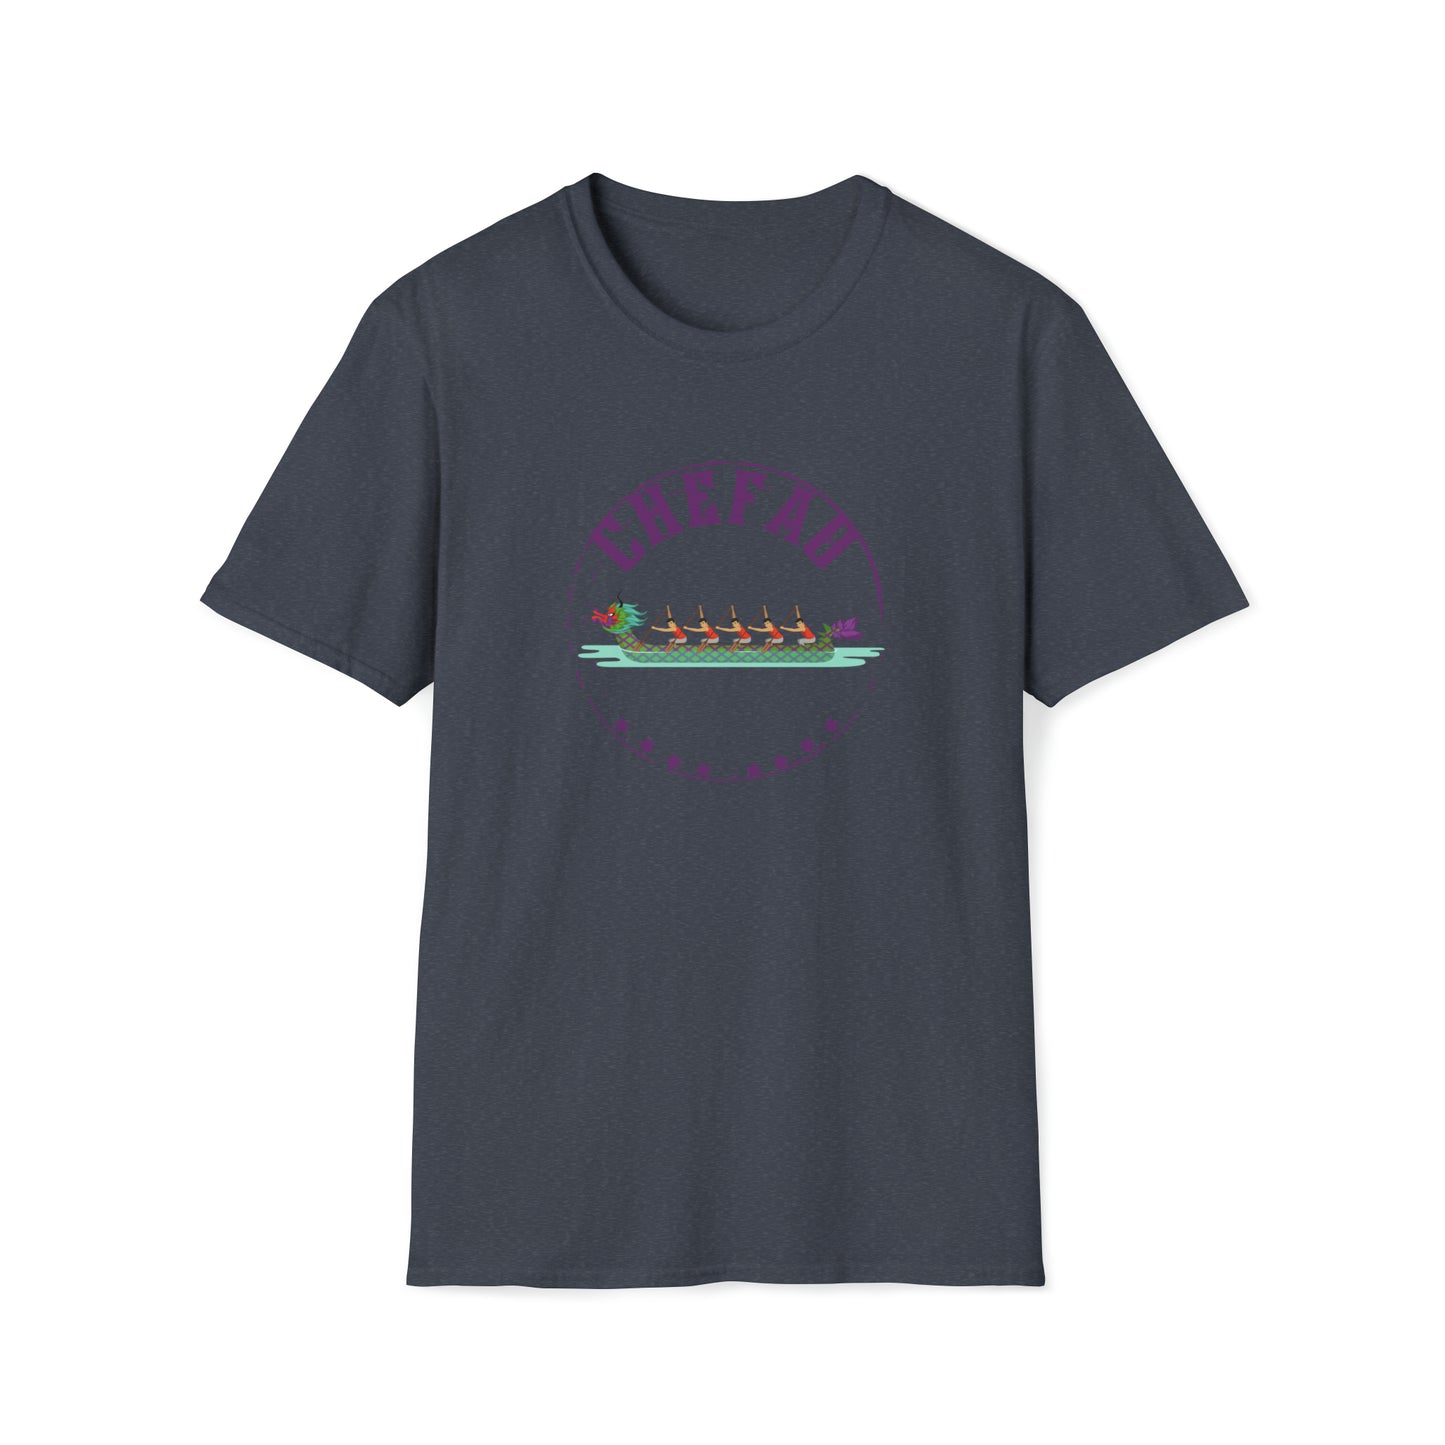 Chefao Dragonboat IV, Unisex Softstyle T-Shirt